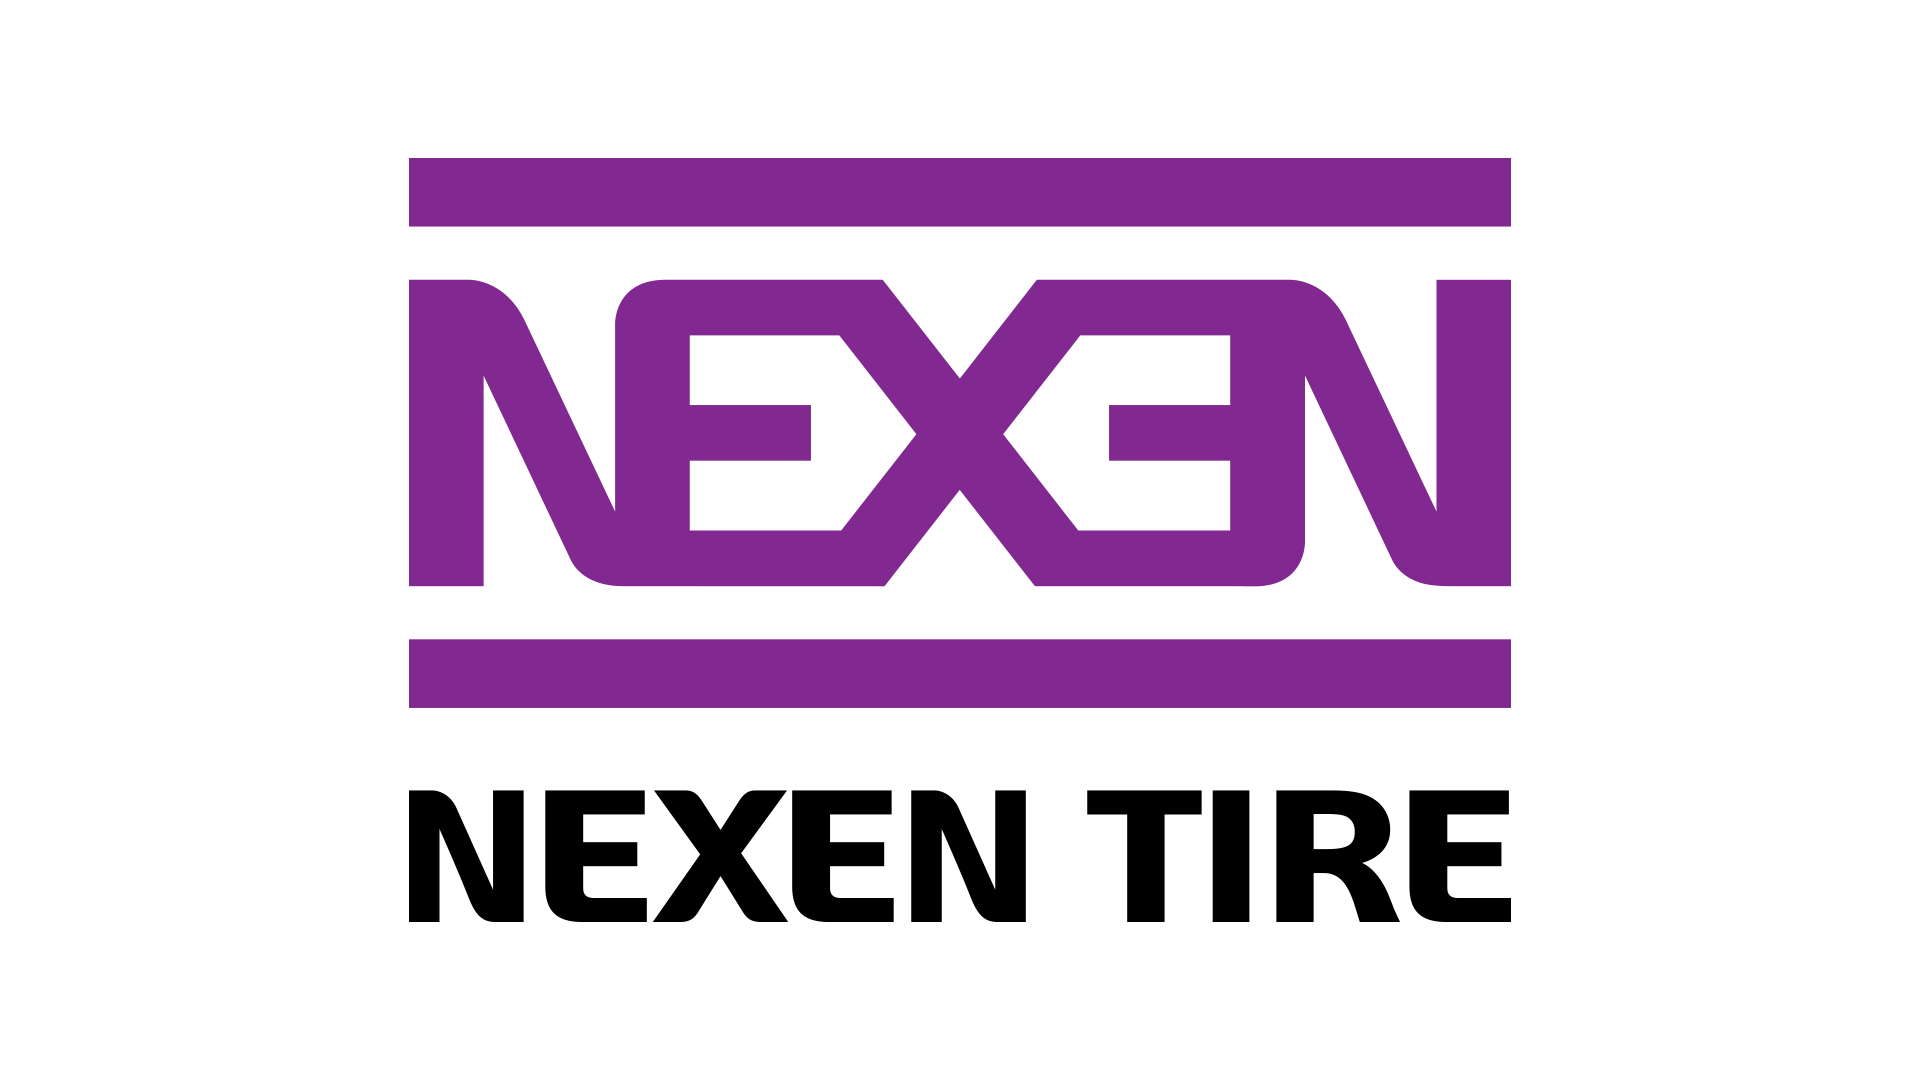 Nexen-logo-1920x1080